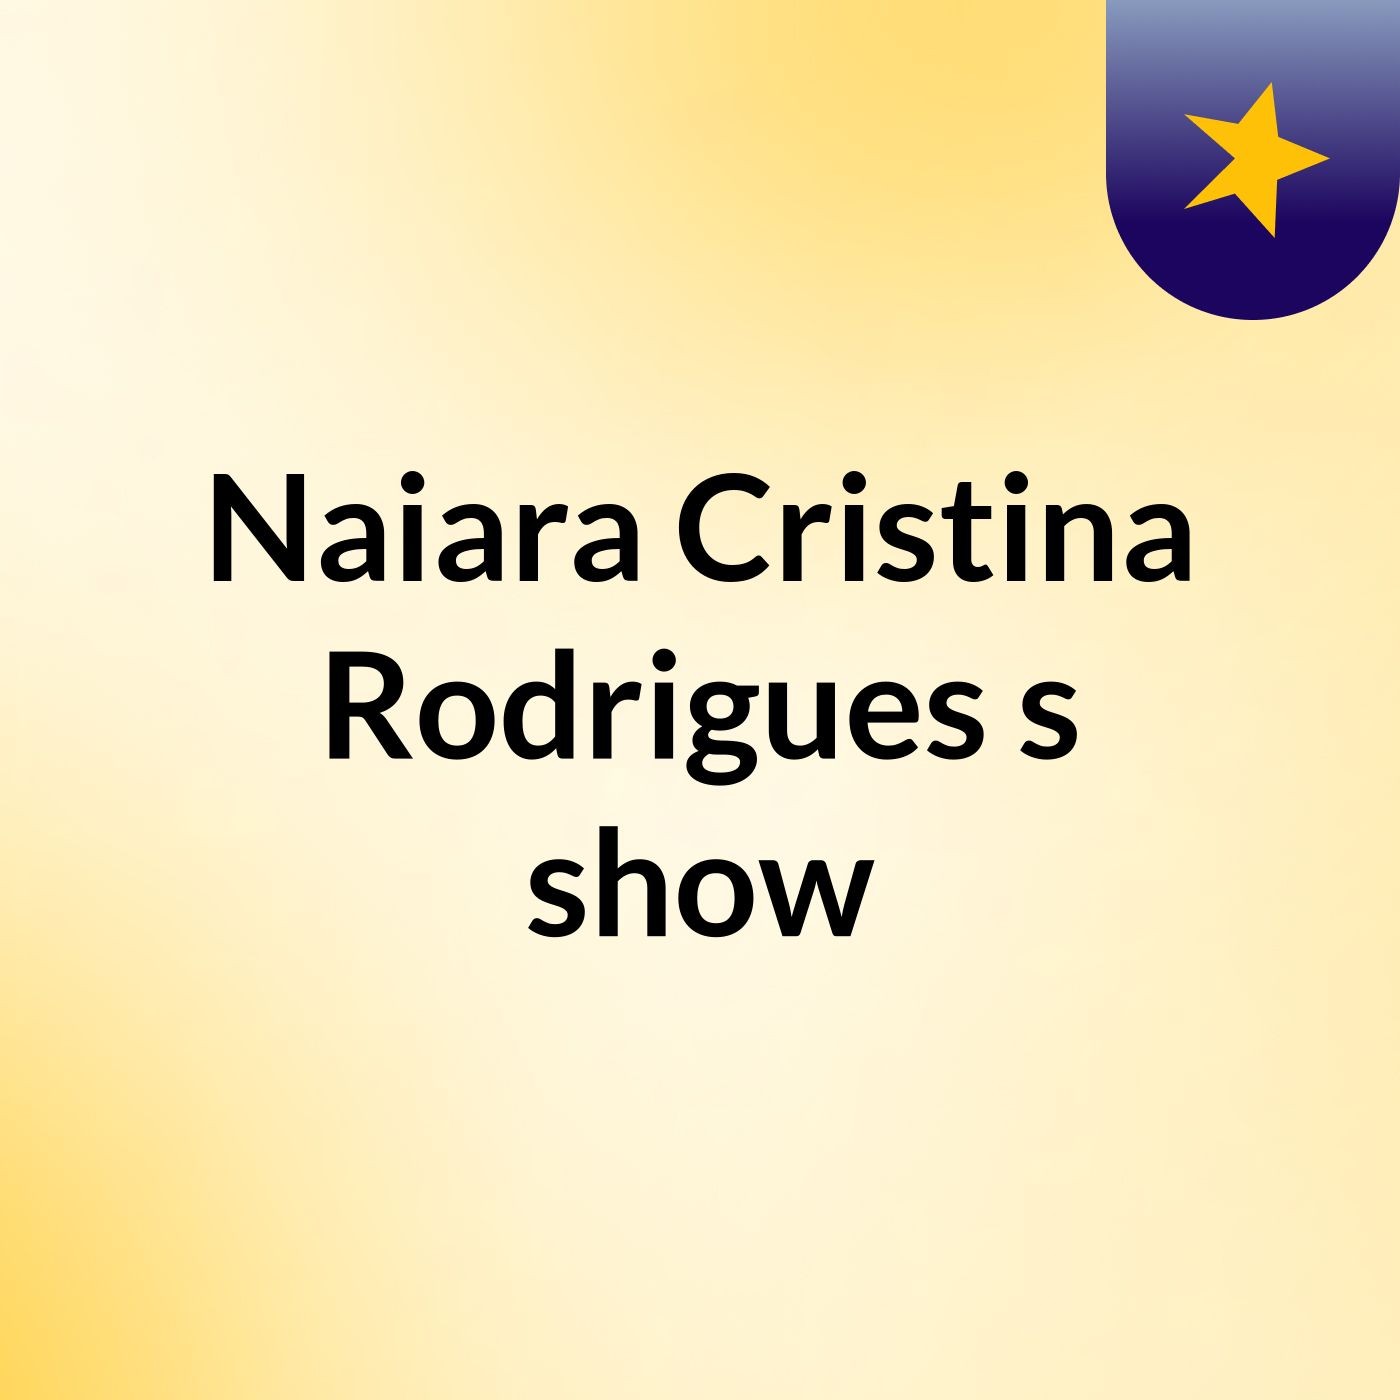 Naiara Cristina Rodrigues's show